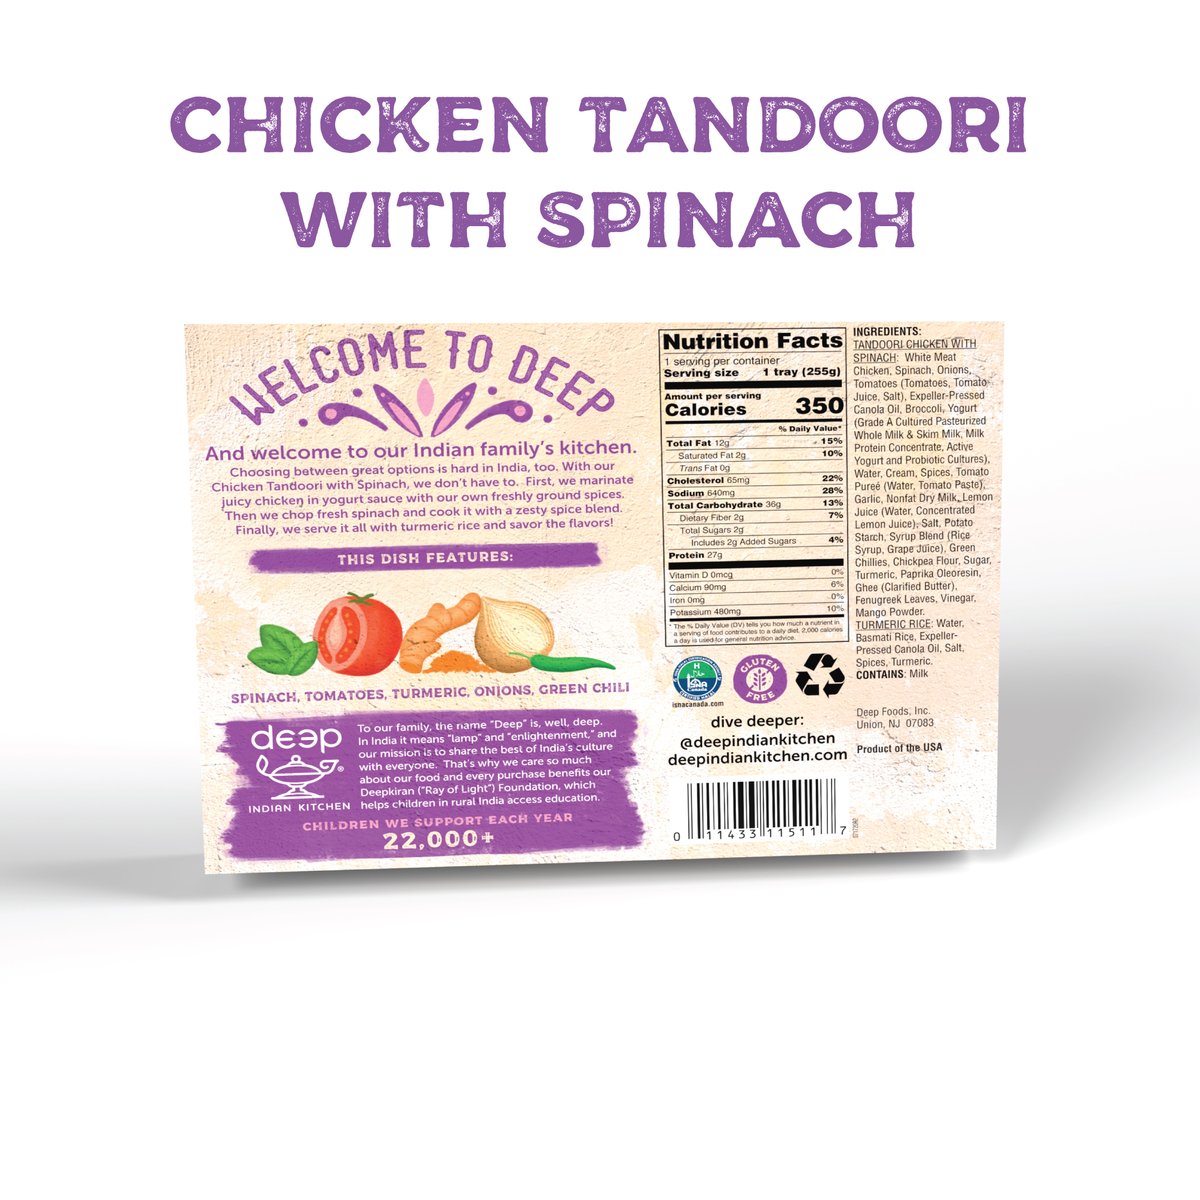 Chicken Tandoori with Spinach